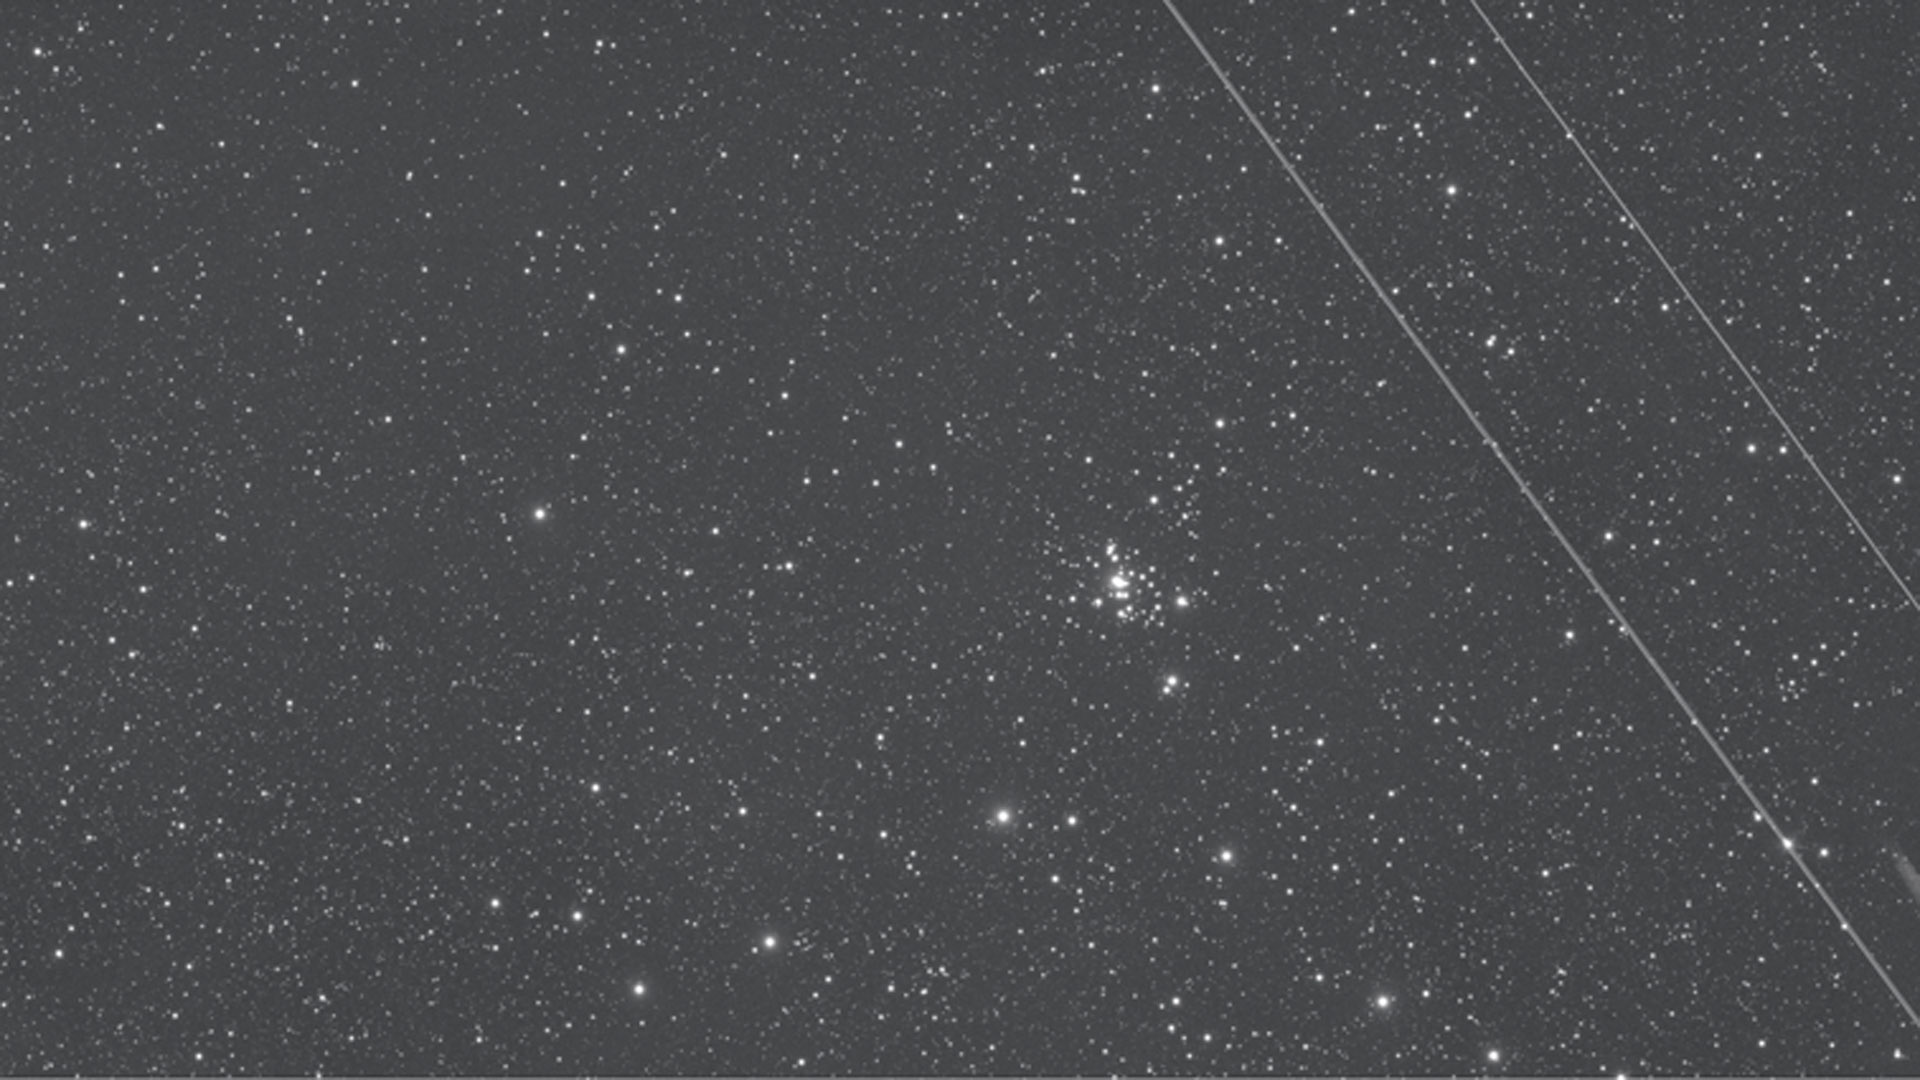 Jakie to denerwujące! Ślad lecącego samolotu na 15-minutowej ekspozycji NGC 1501. Czy ta klatka nadaje się jeszcze do wykorzystania? M.Weigand